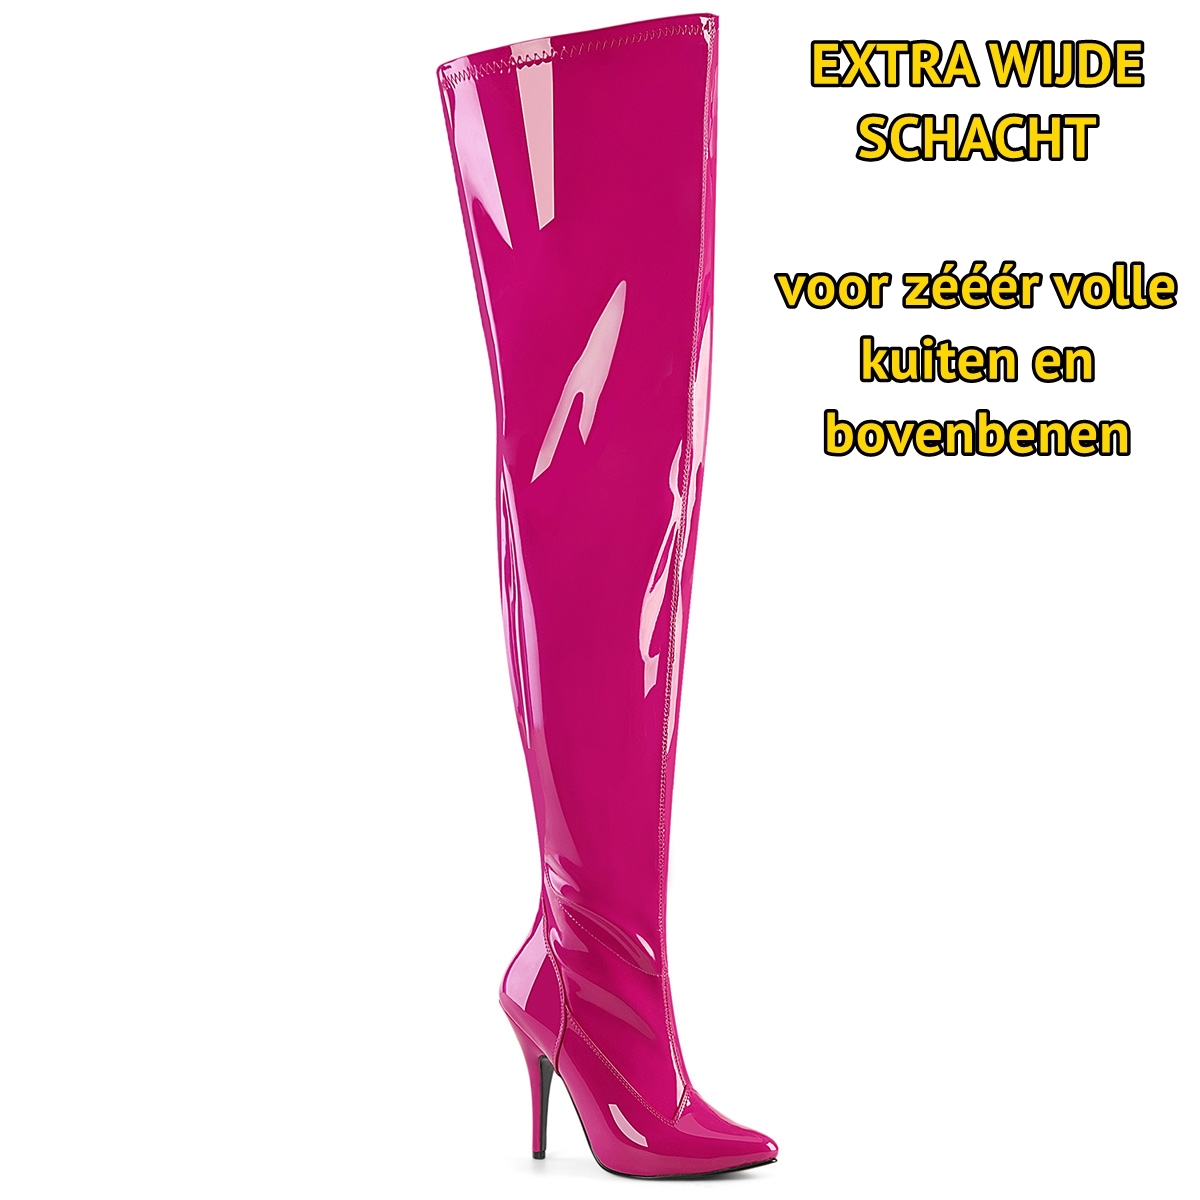 2638-64-007 – Extra wijde lak overknee laarzen in fuchsia – Roze lak overkneelaarzen met extra wijde schacht